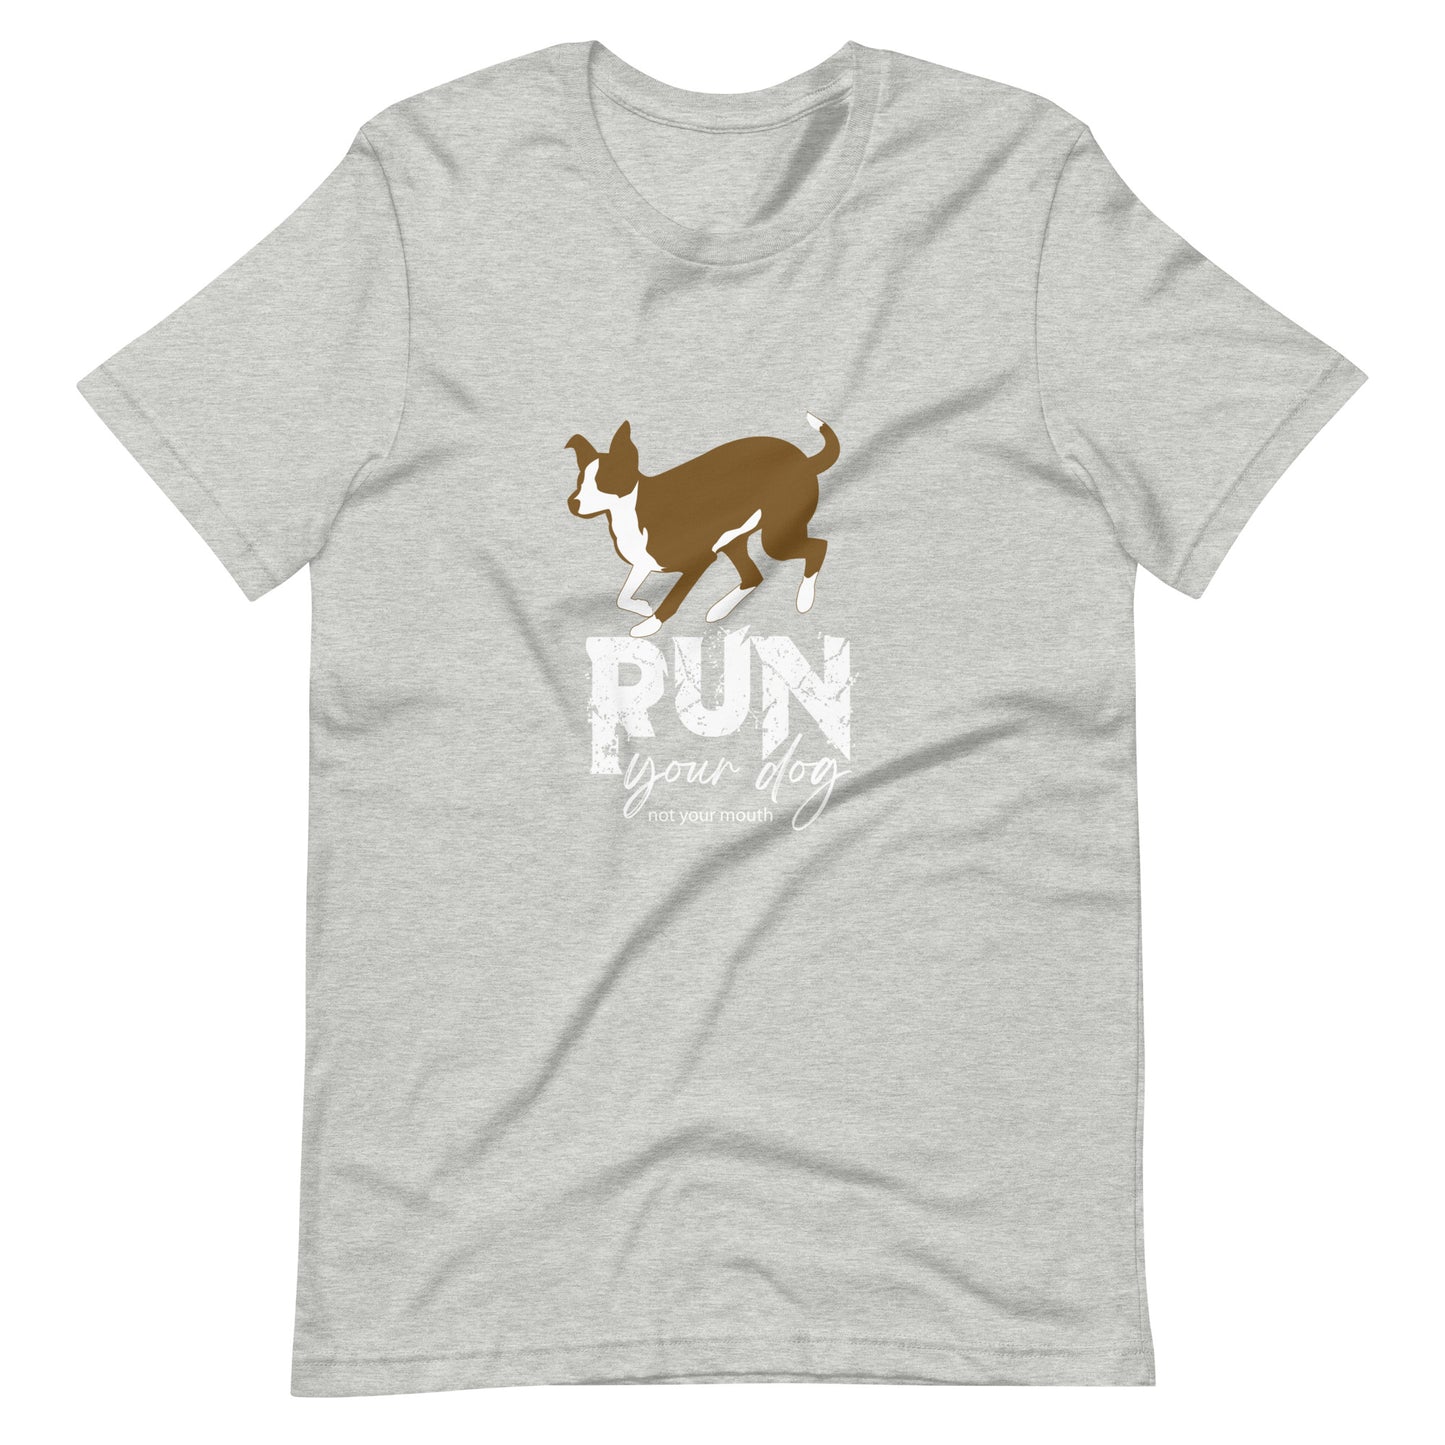 RUN YOUR DOG - McNab - Unisex t-shirt